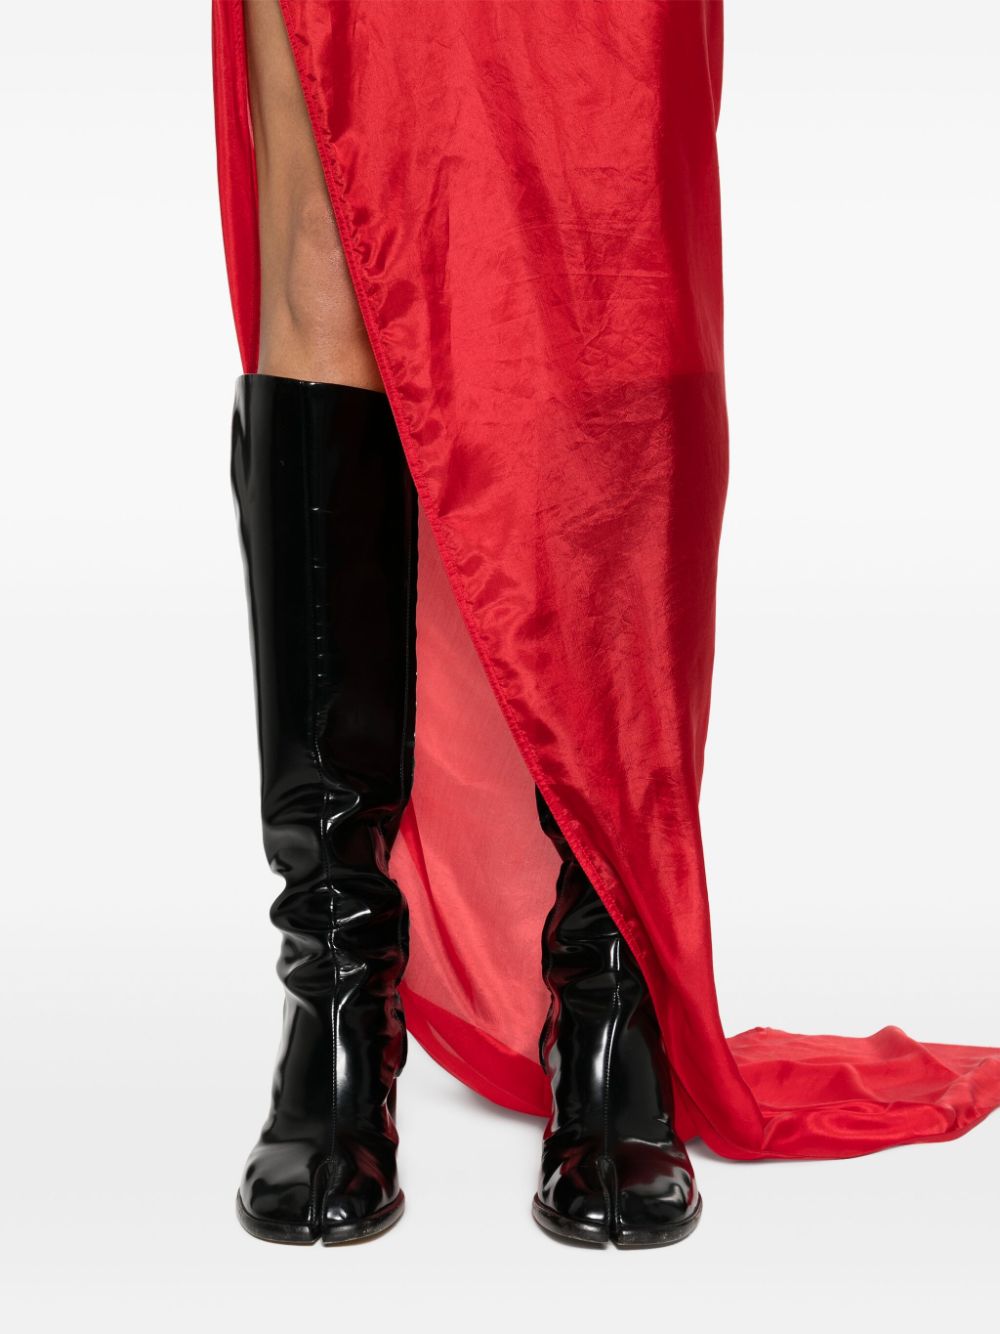 亮紅色絲綢長禮服 - 高領, 半透明, 地板長度